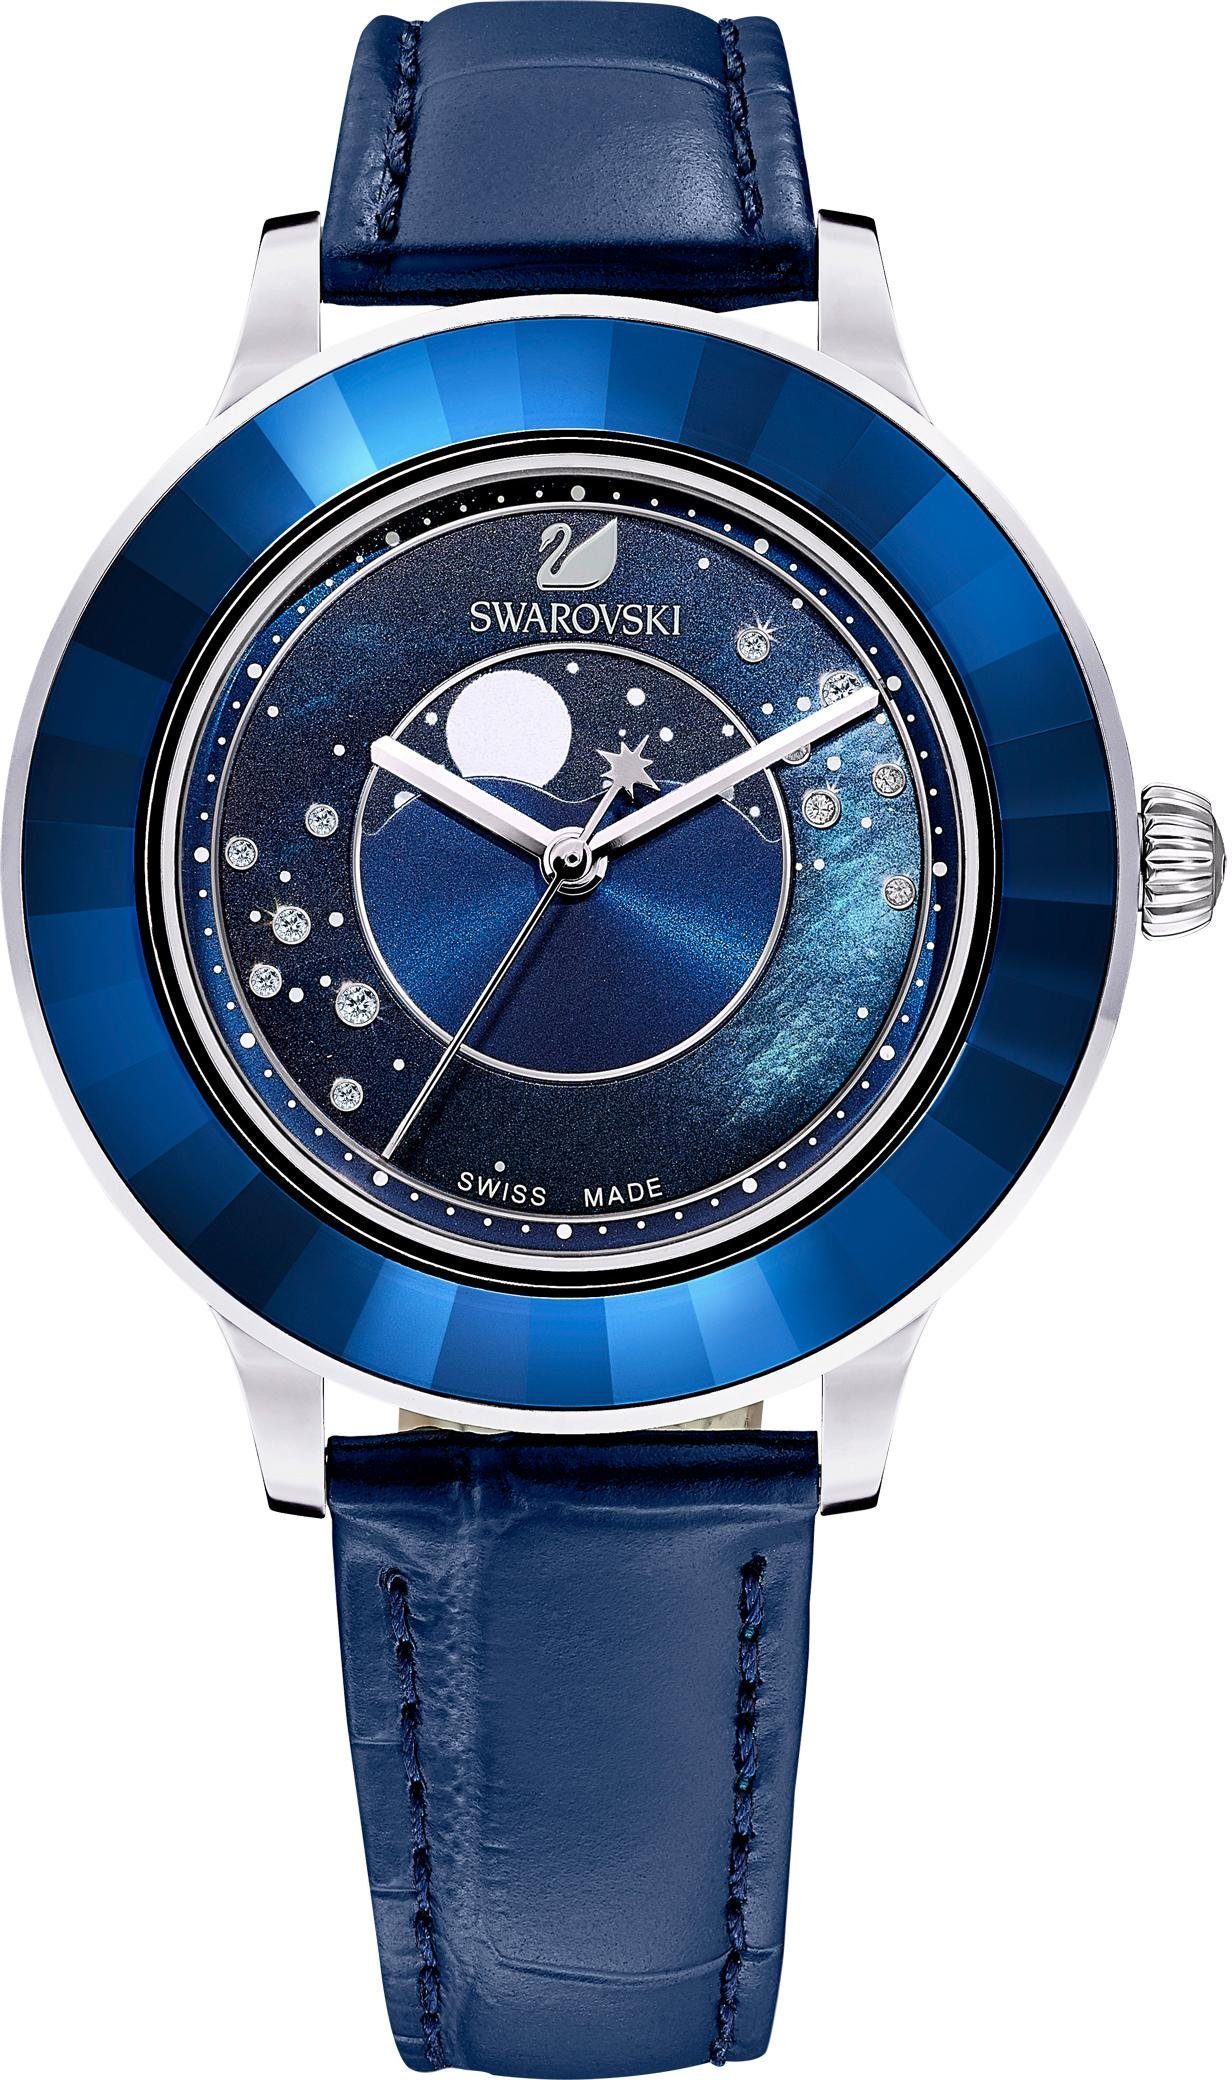 Swarovski Schweizer Uhr OCTEA LUX MOON LS, 5516305